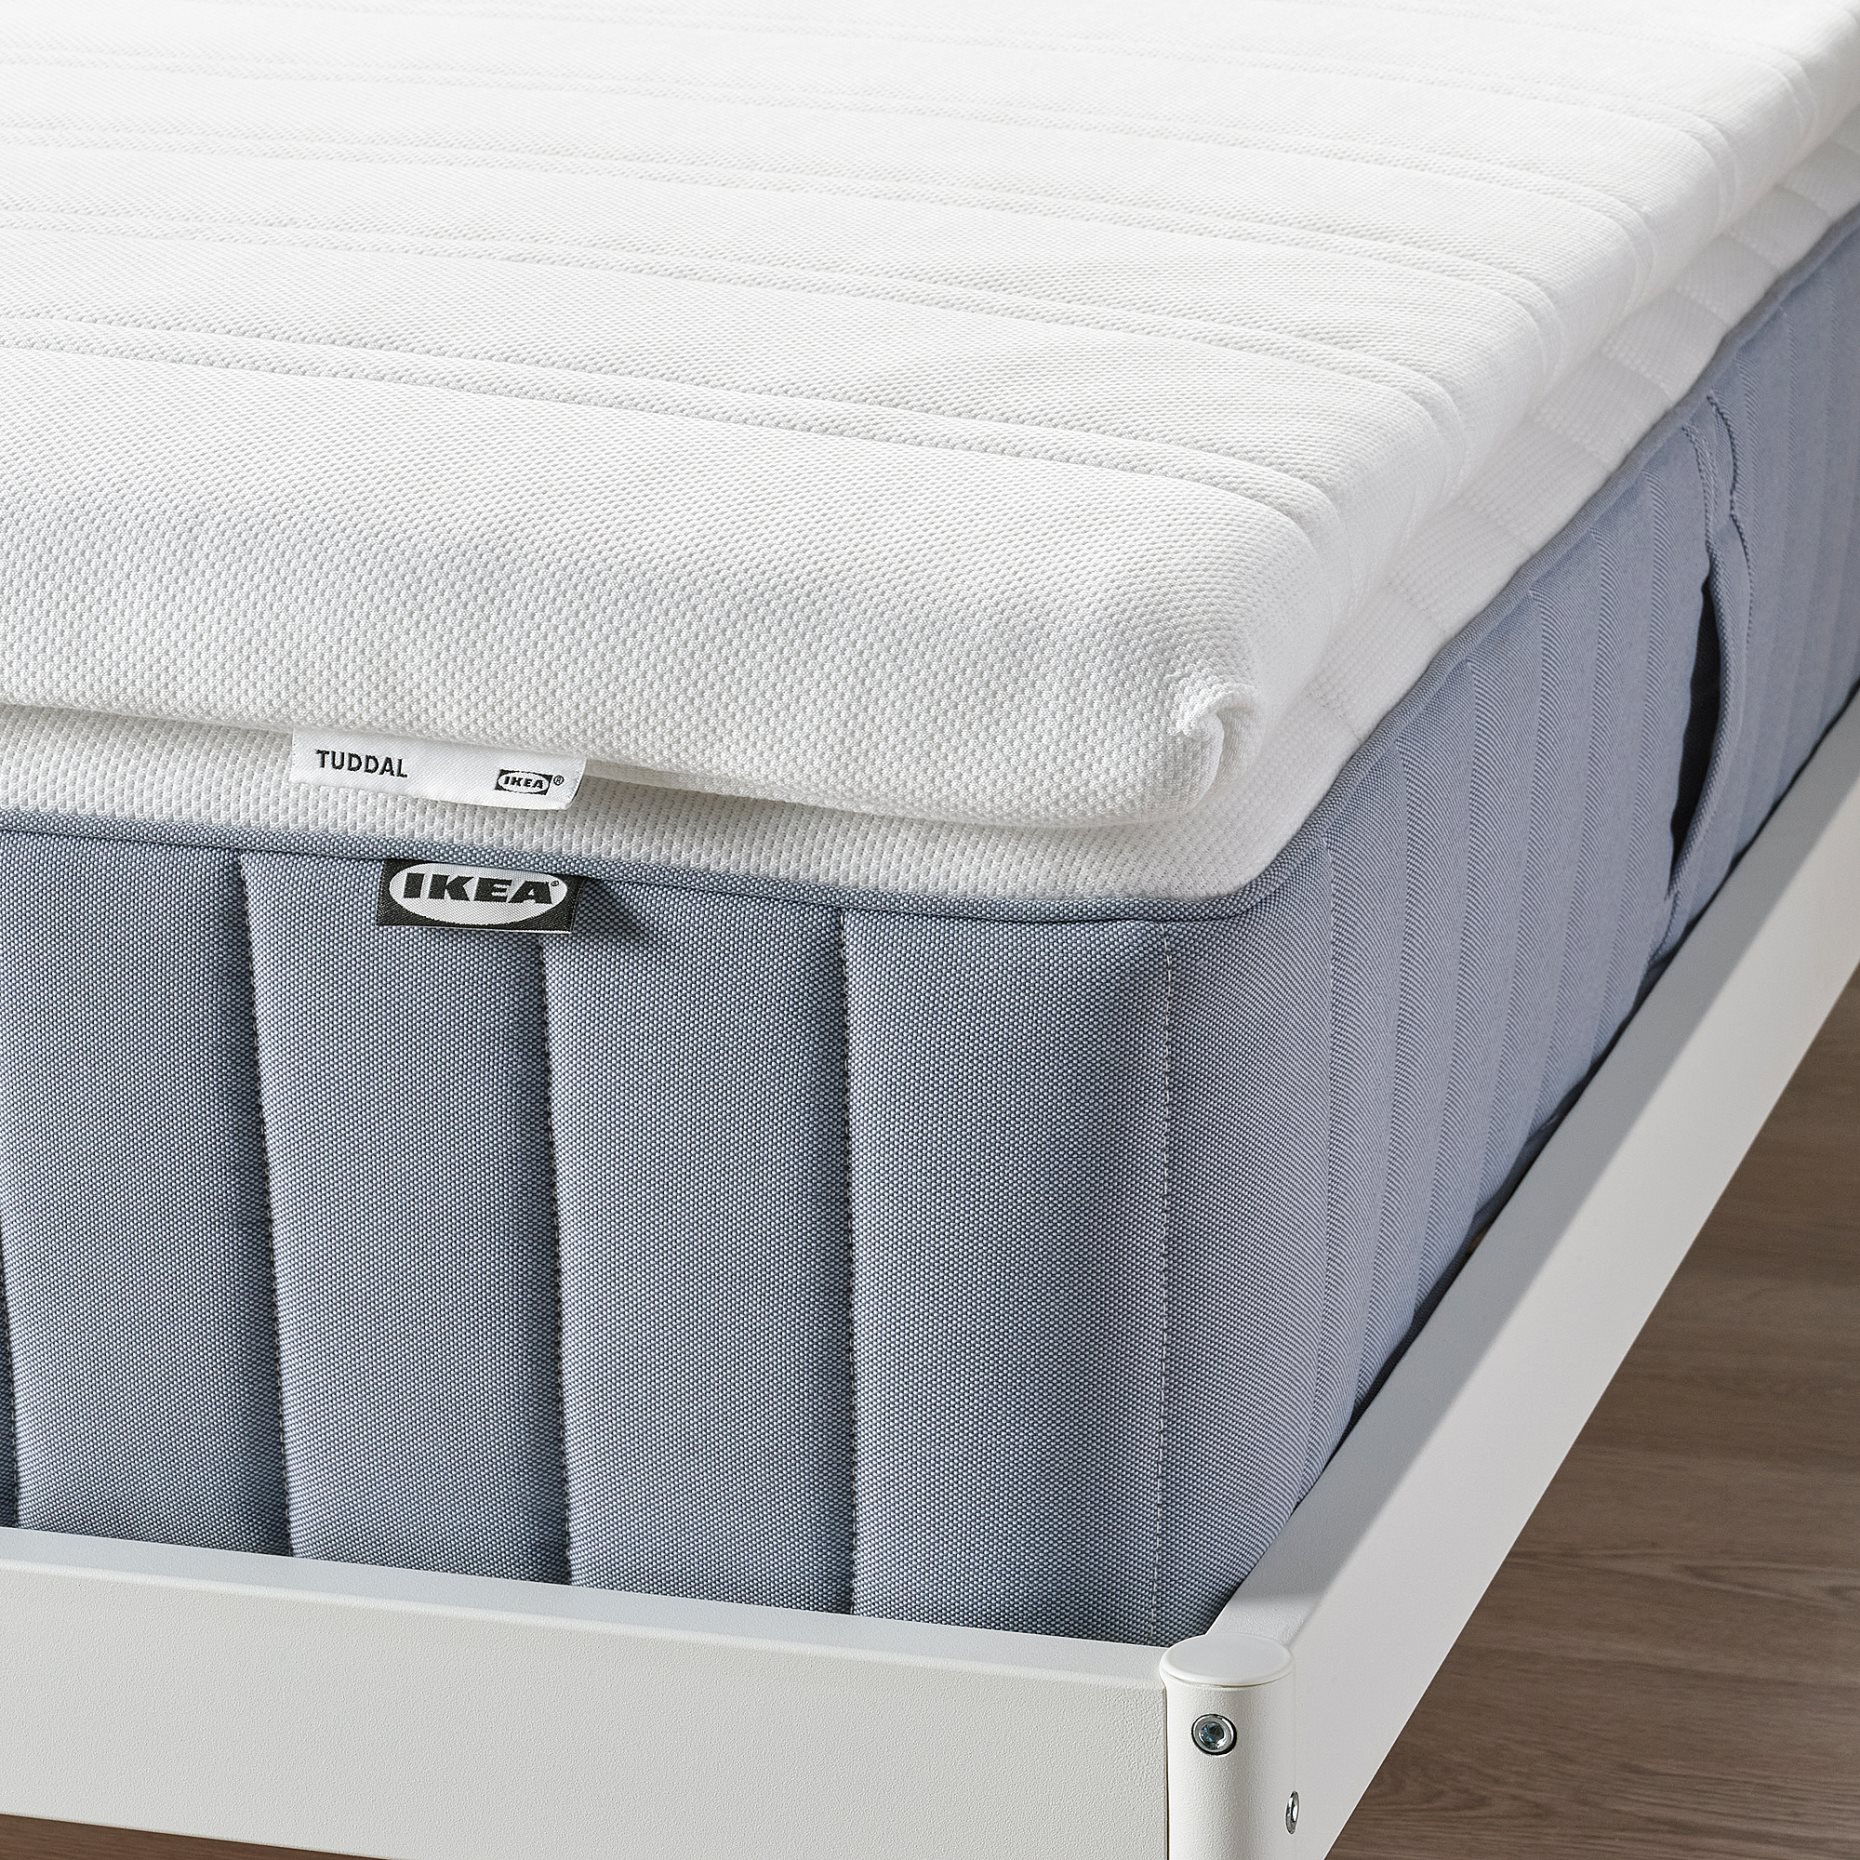 TUDDAL, mattress pad, 002.981.85